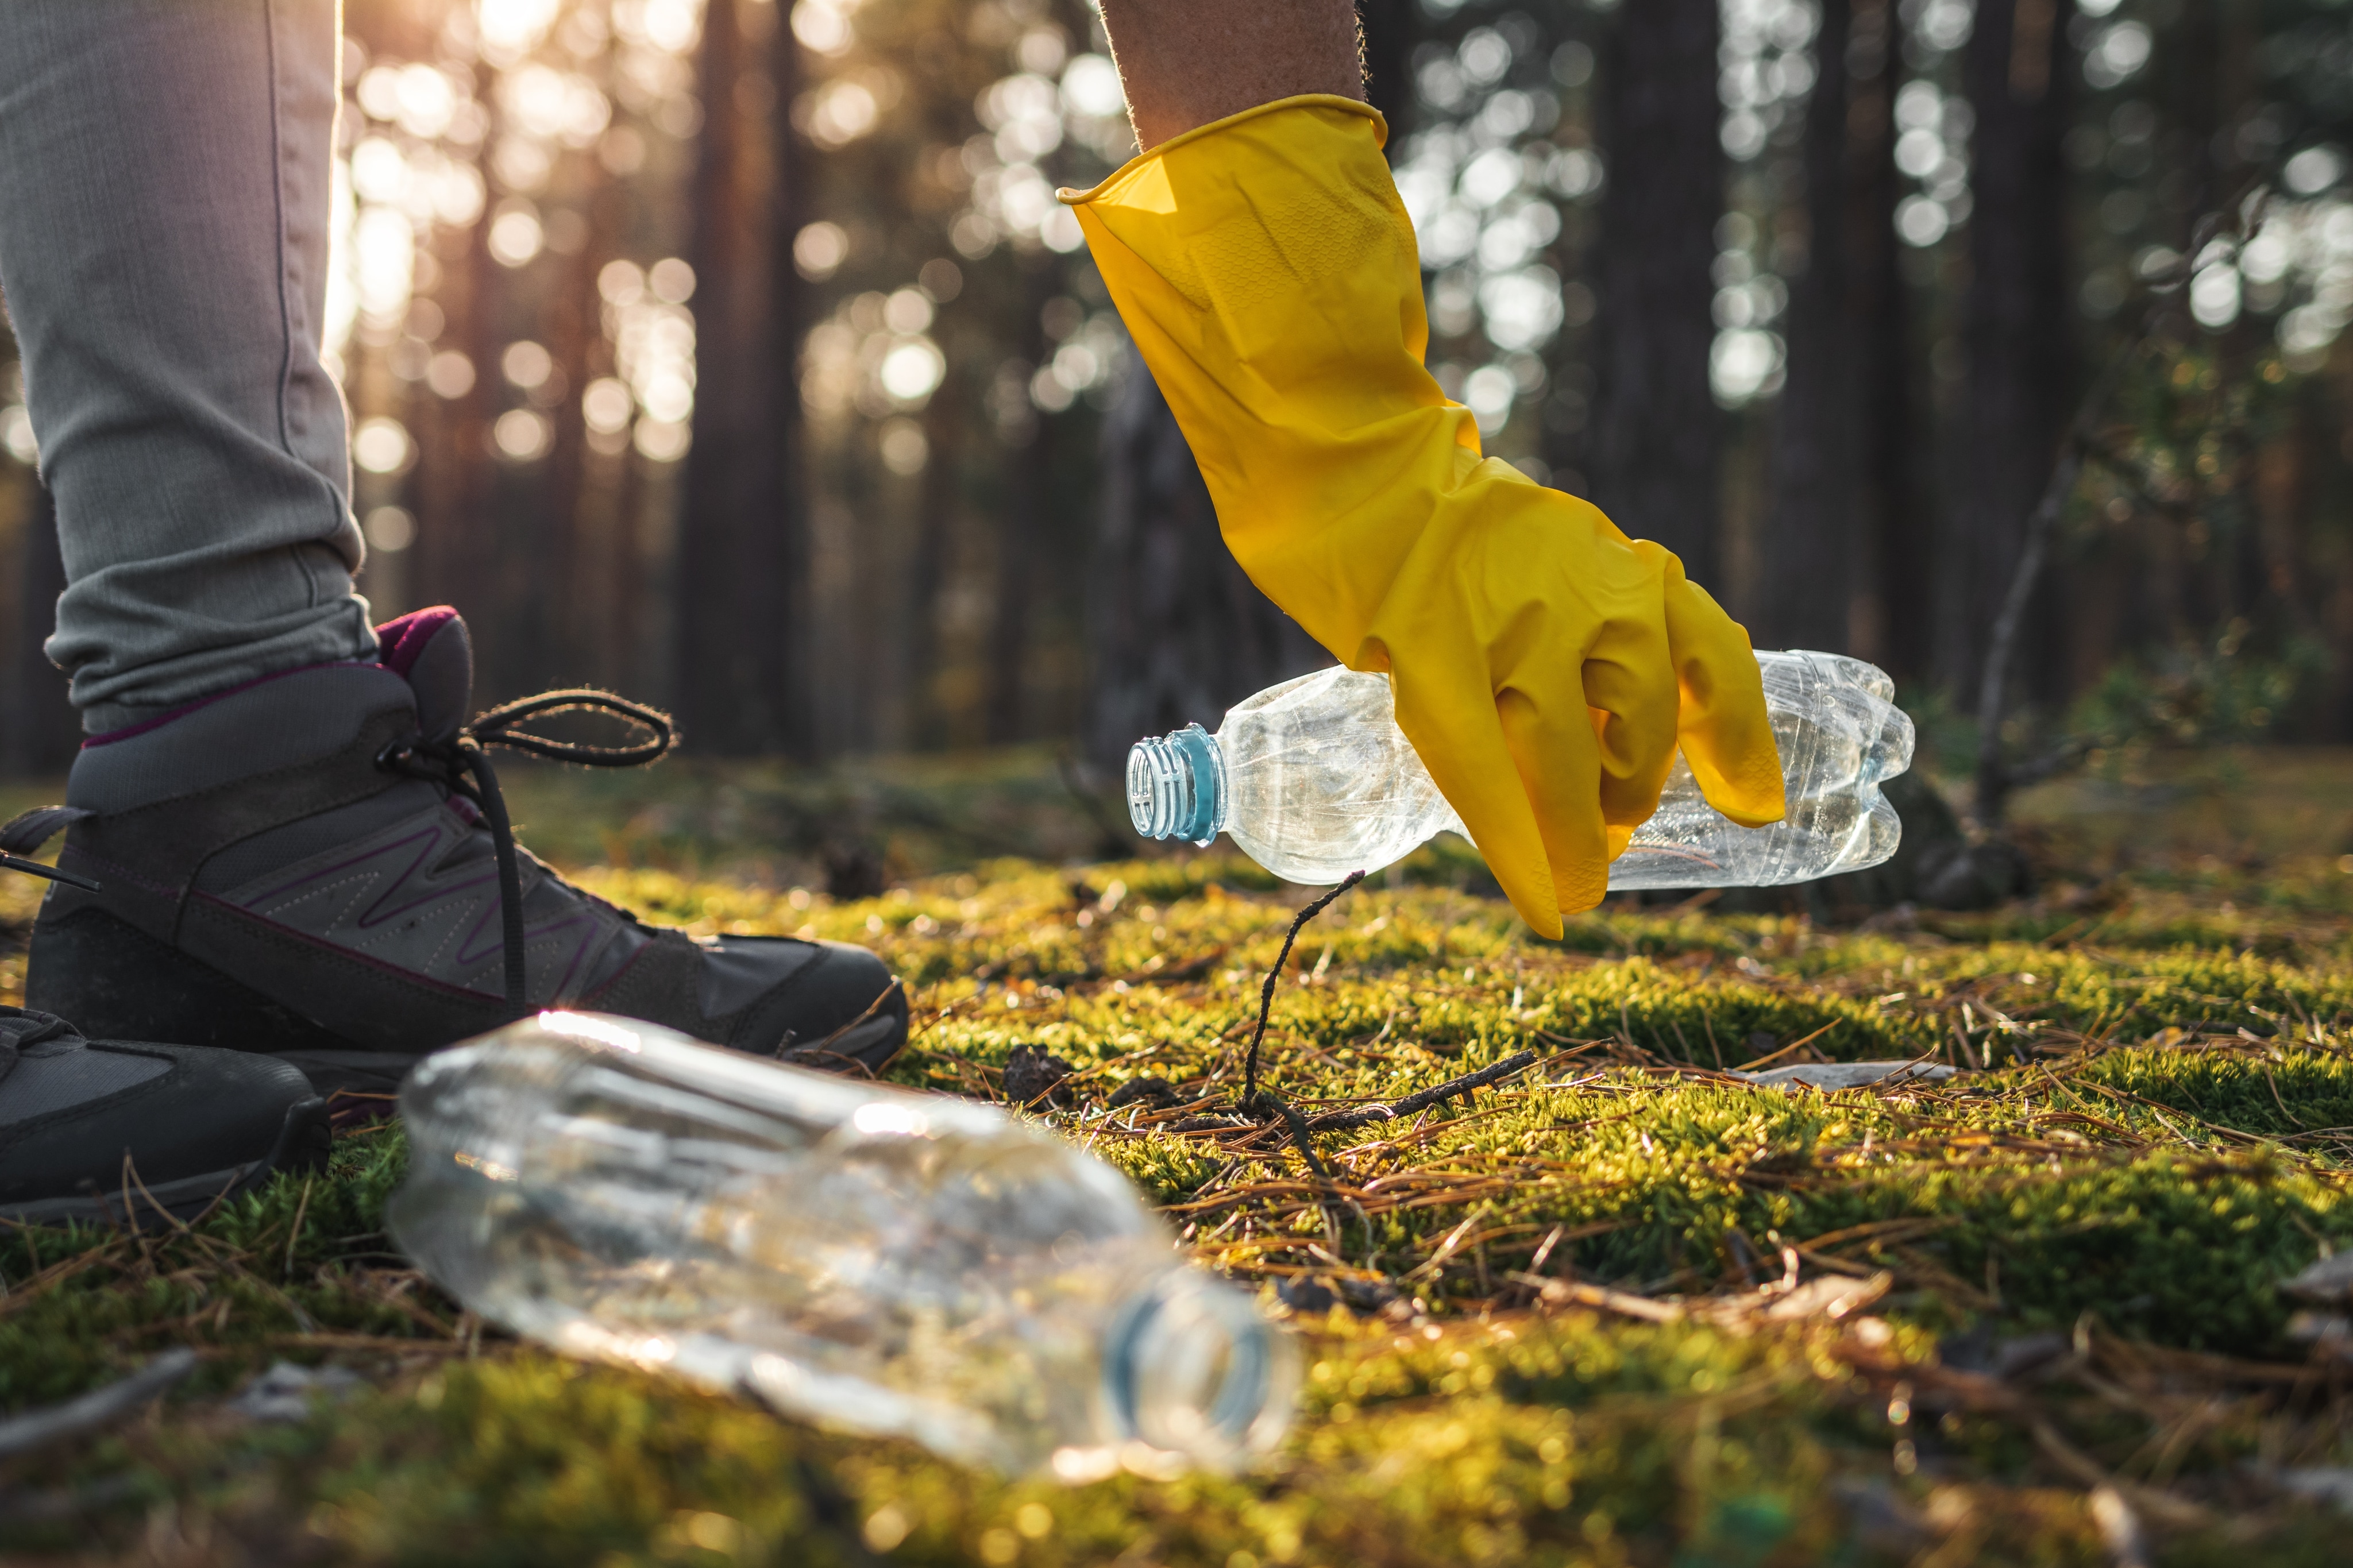 Une personne portant des bottes de randonnée et un gant jaune ramasse une bouteille d’eau en plastique dans une forêt. Une autre bouteille d’eau en plastique se trouve à proximité. 